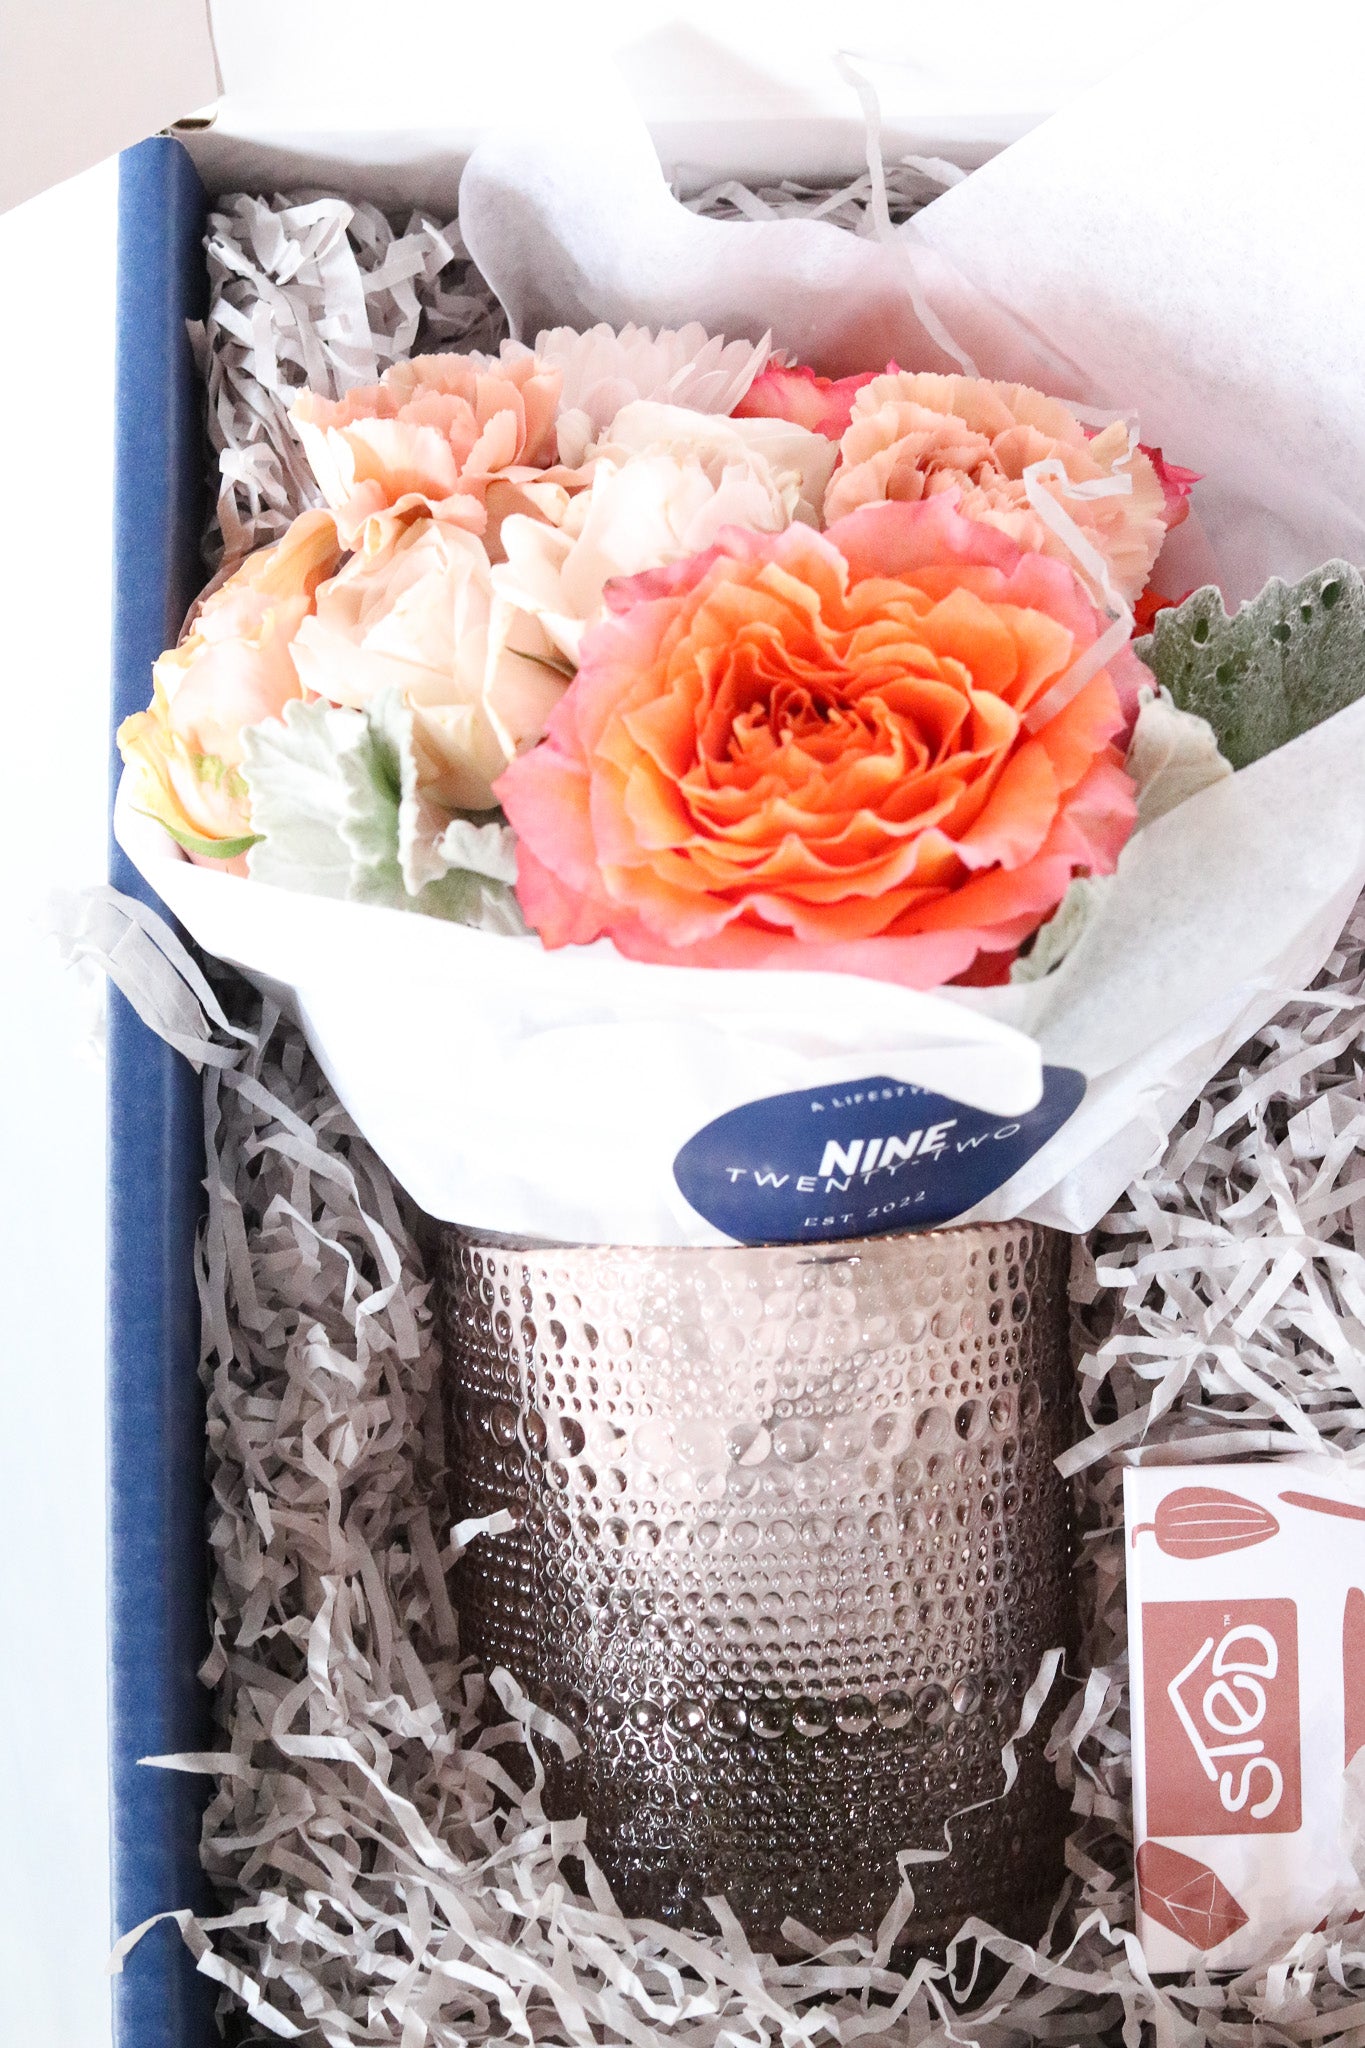 Flowers + Chocolate Gift Box